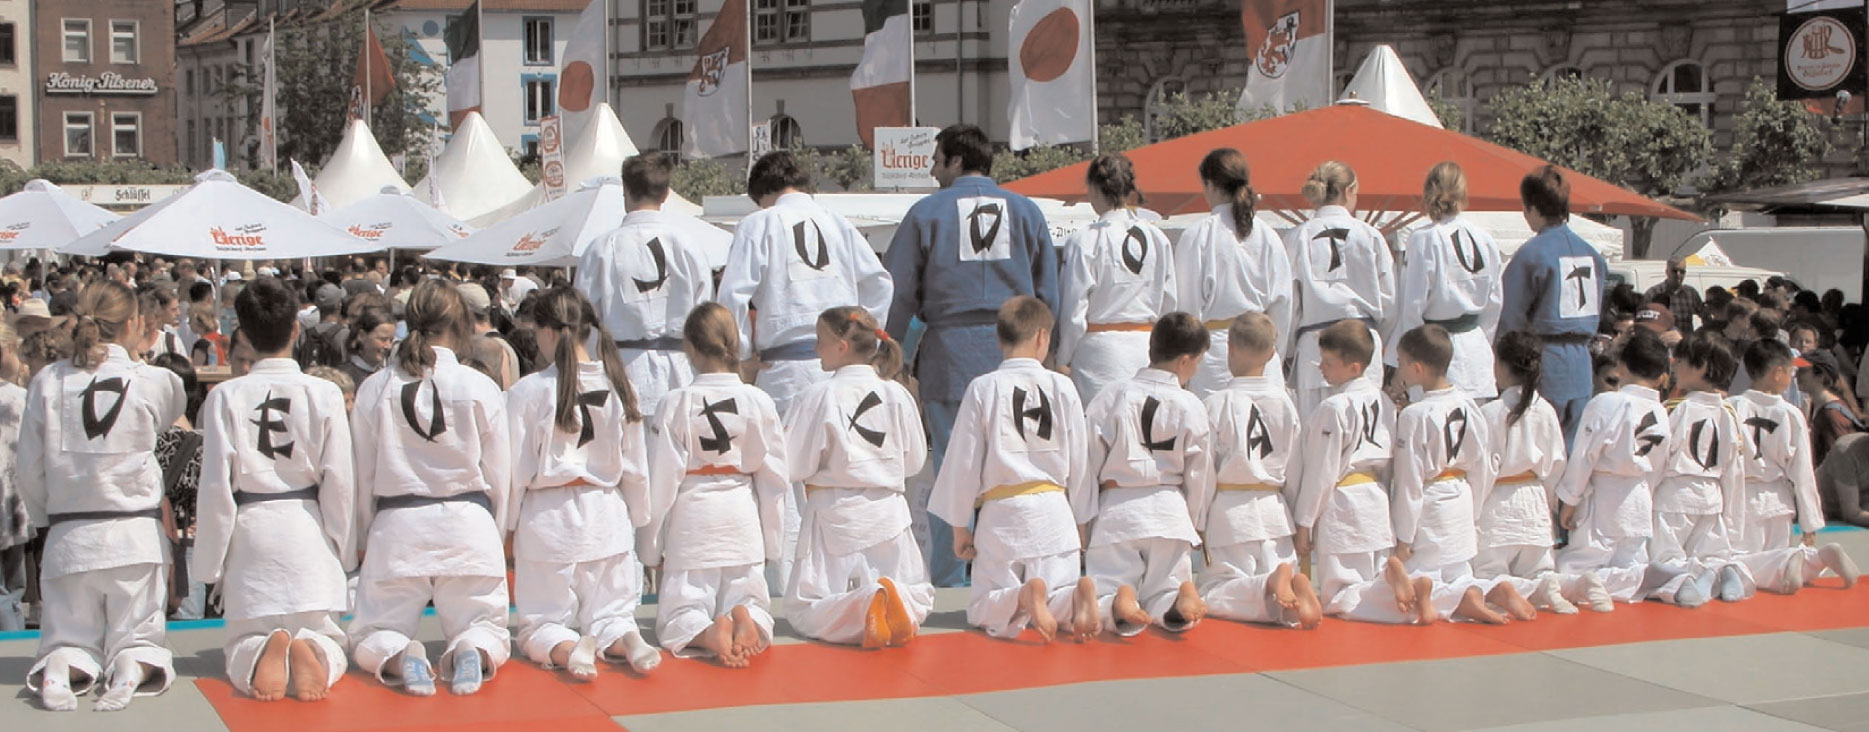 judo_tut_gut